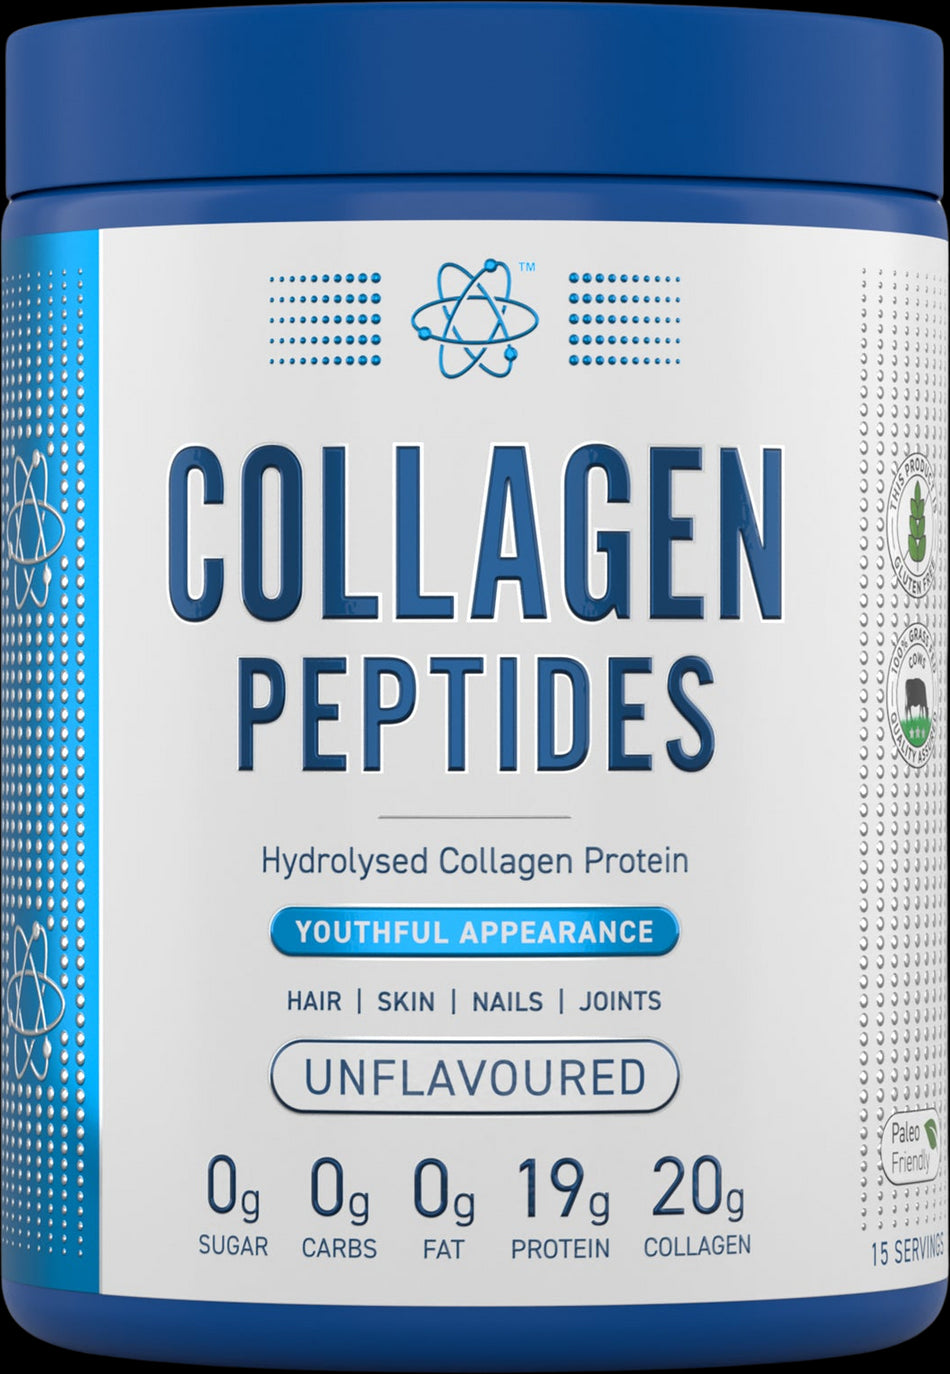 Collagen Peptides | Hydrolyzed Collagen Protein - BadiZdrav.BG